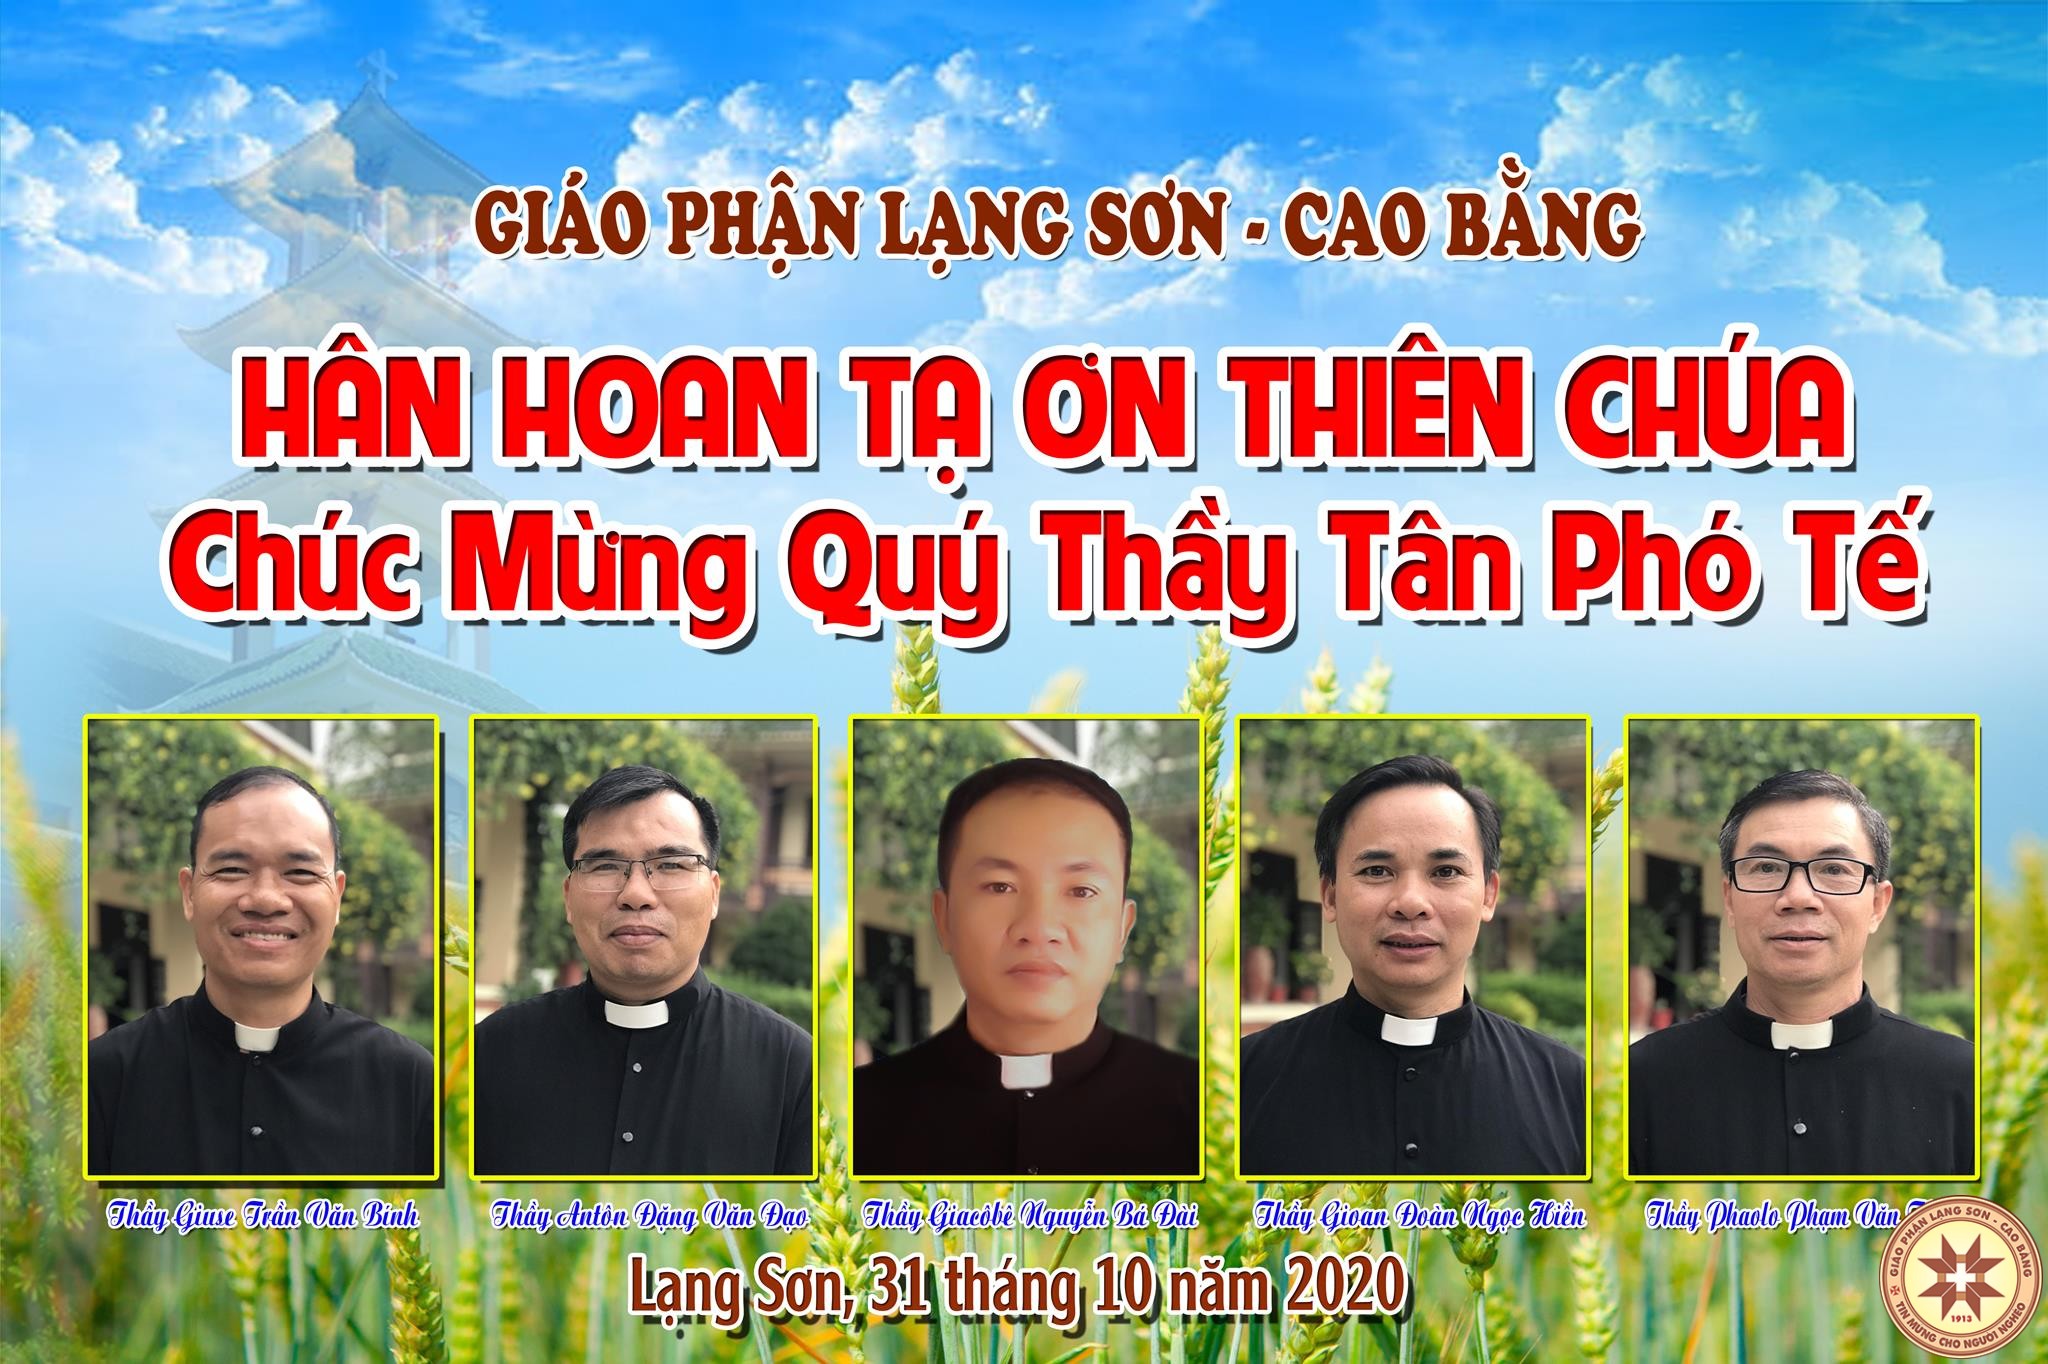 GP.Lạng Sơn - Hình ảnh Thánh lễ Truyền chức Phó Tế tại Nhà thờ Chính Tòa 